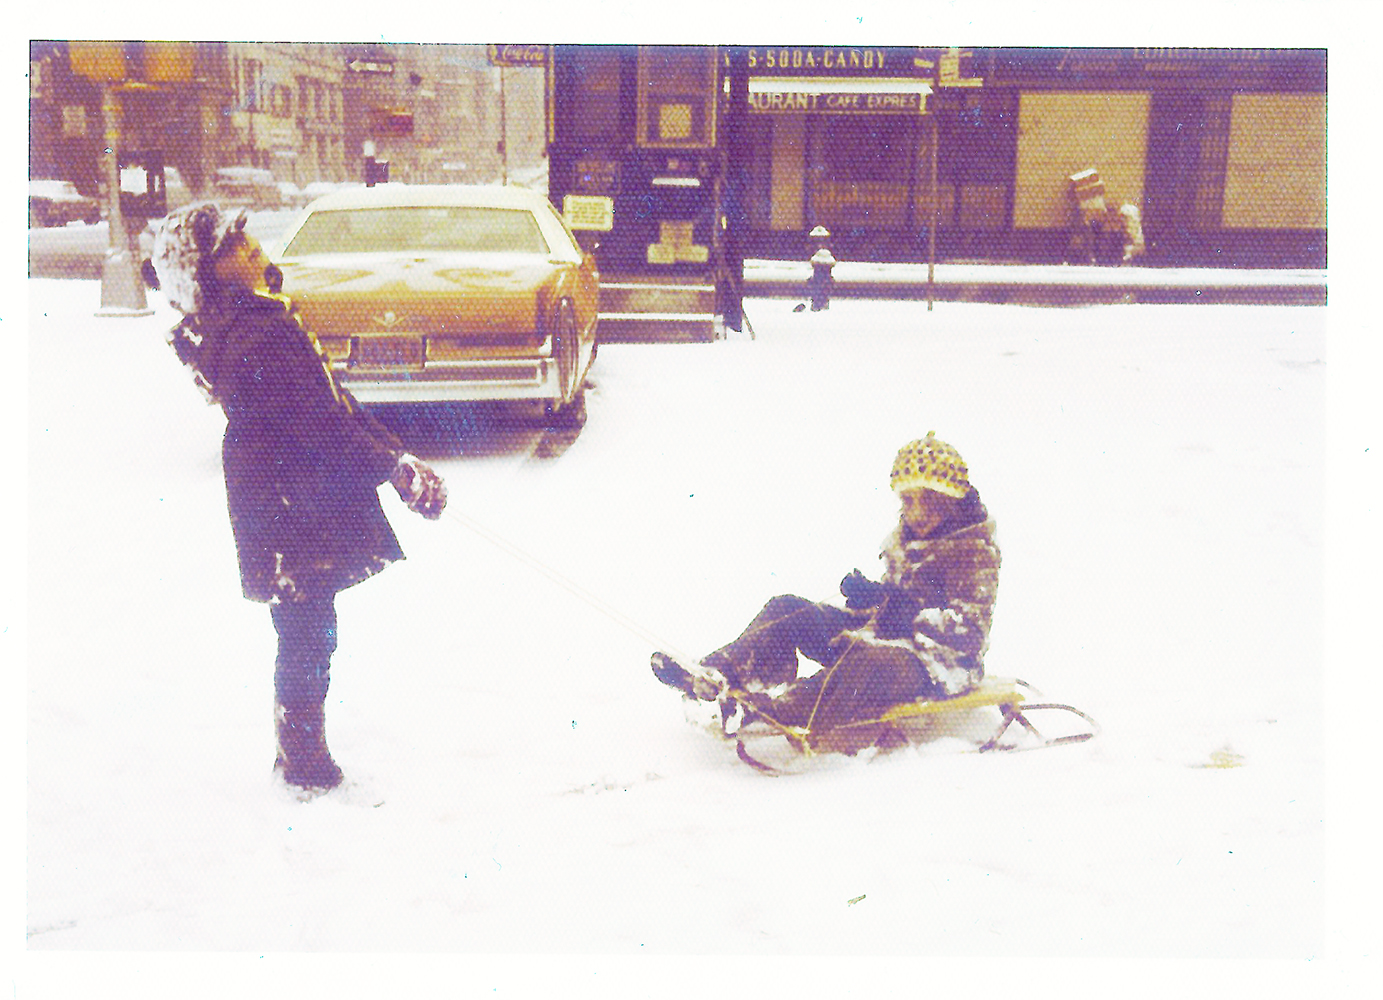 Children Sledding in SoHo Parking Lot 1970s